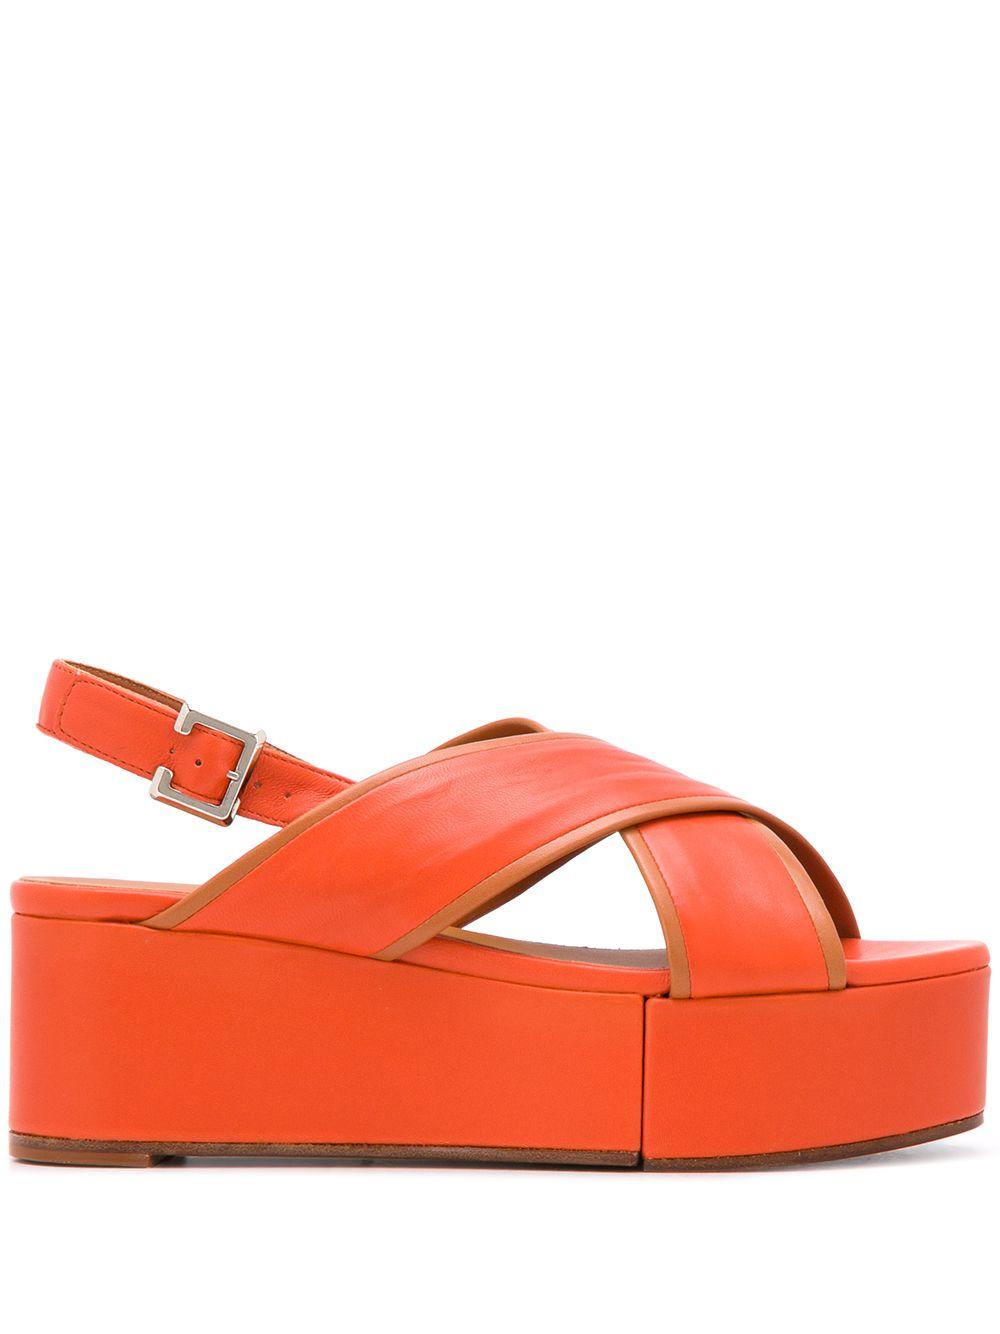 Robert Clergerie Myrta Platform Sandals in Orange | Lyst